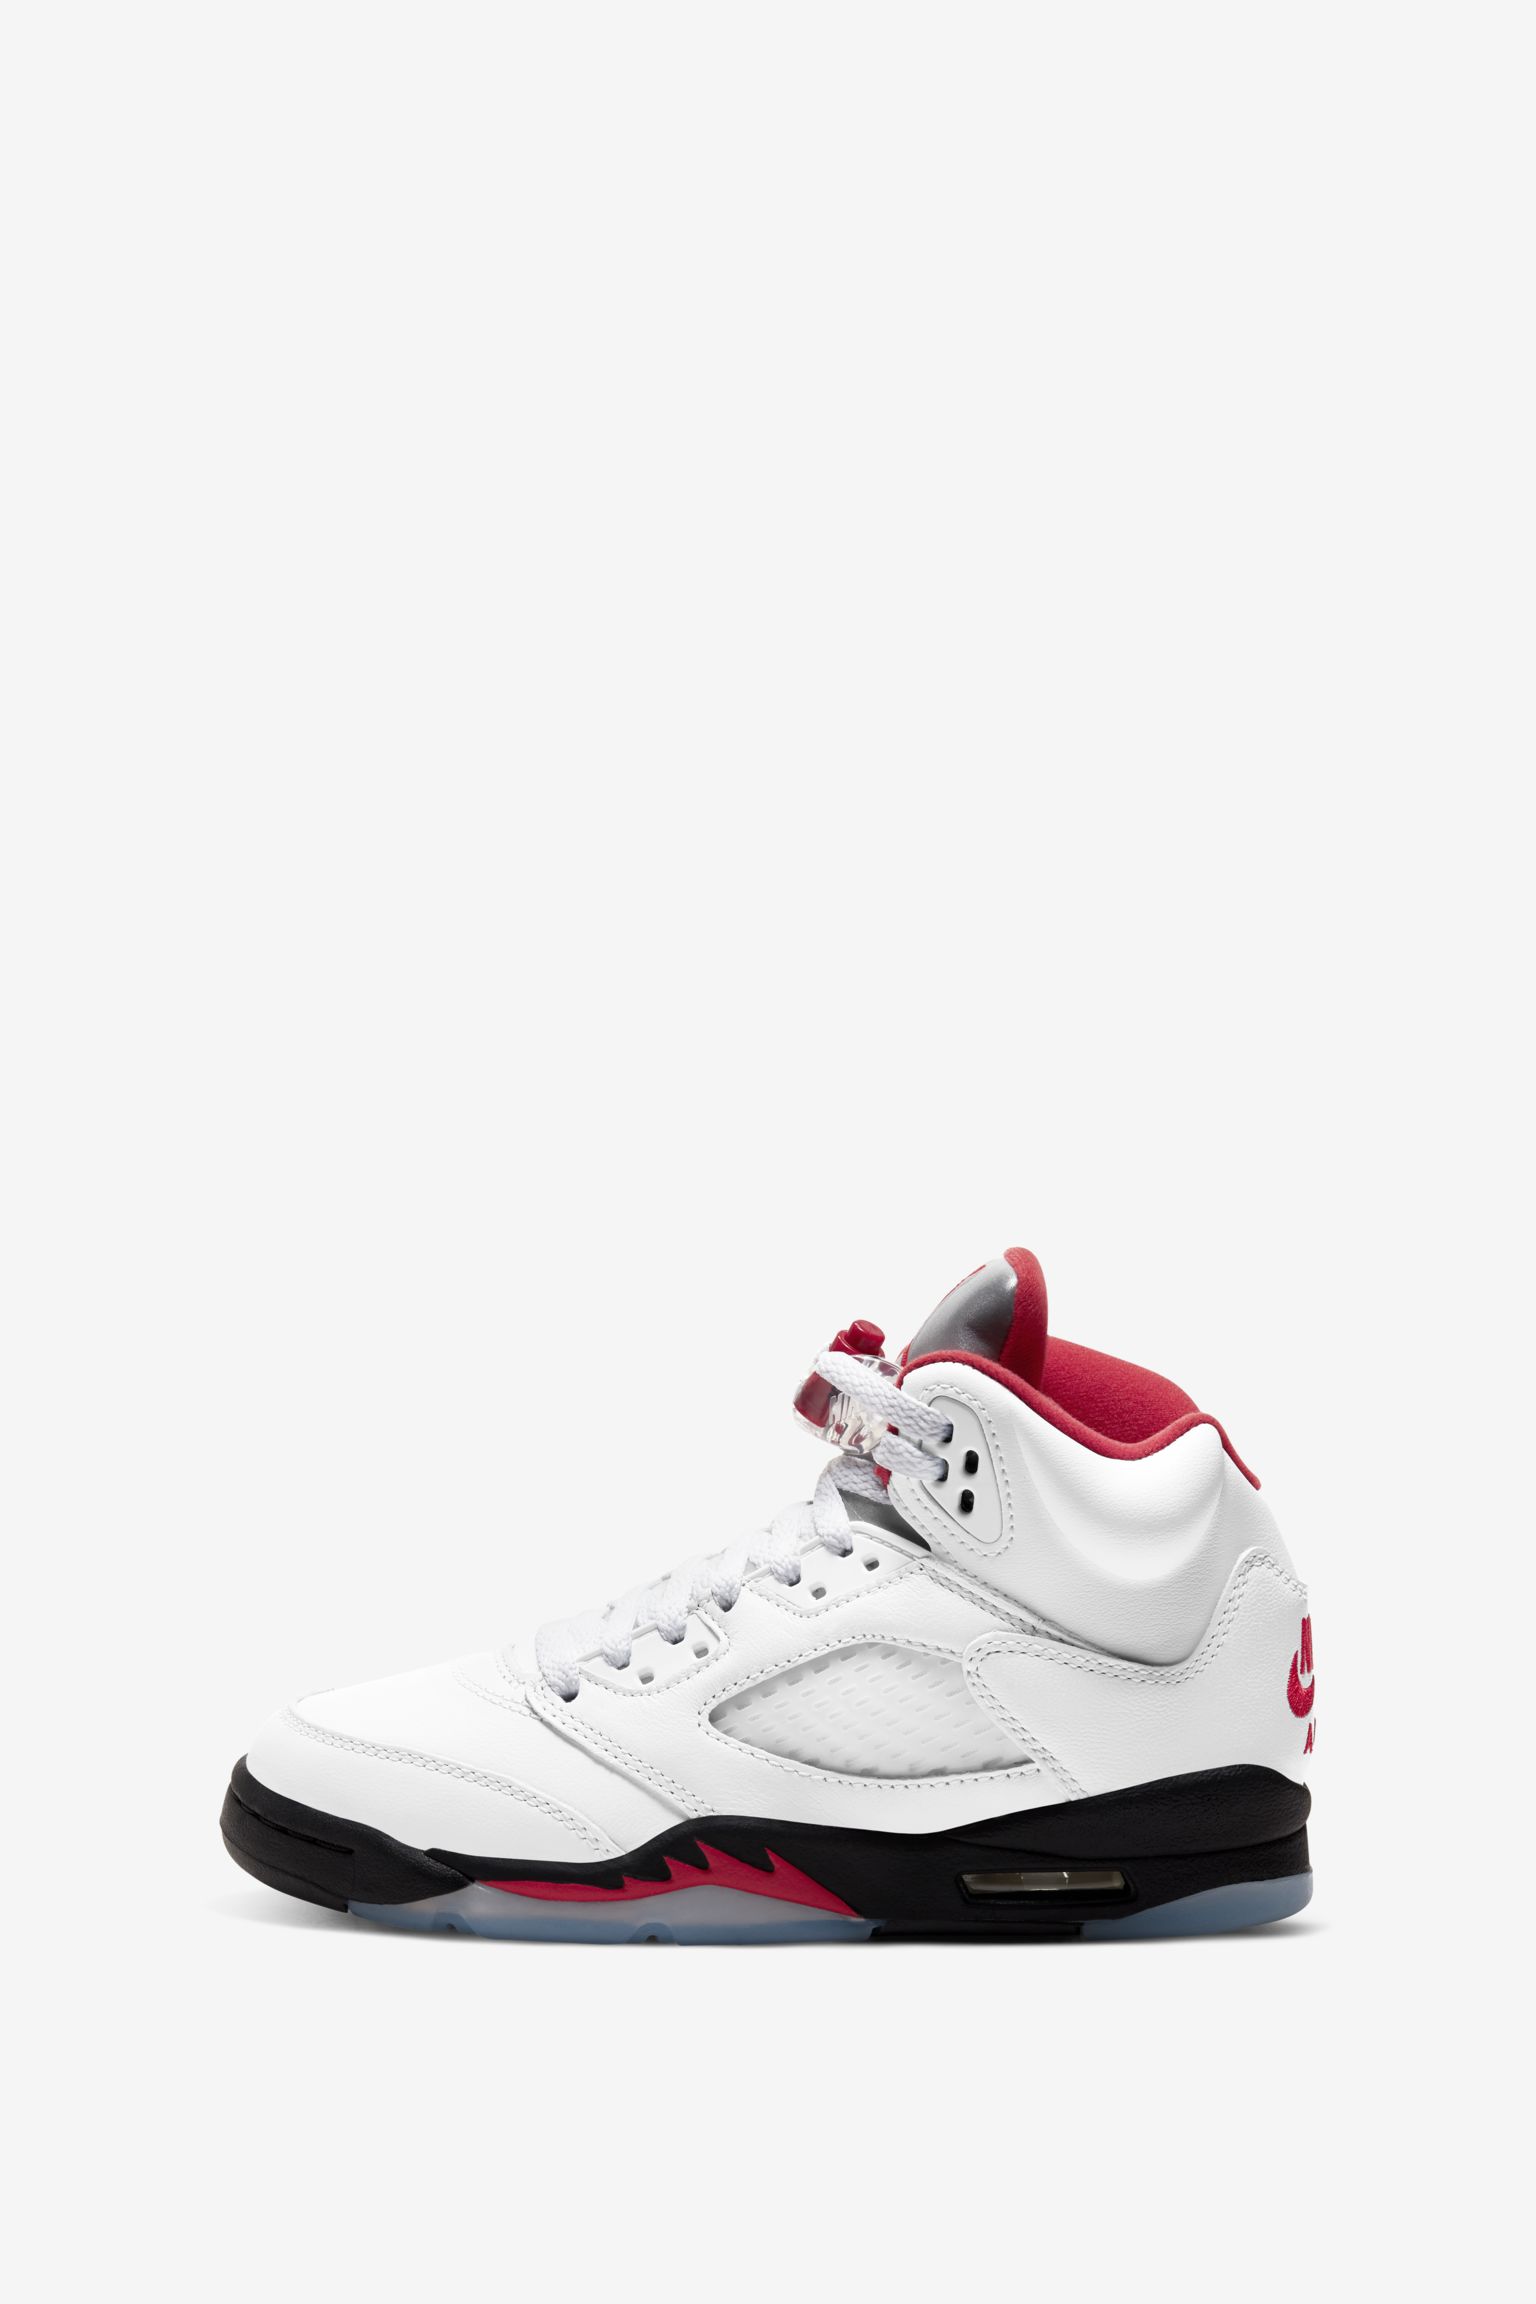 Fecha de lanzamiento de las Air Jordan 5 "Fire Red". Nike SNKRS